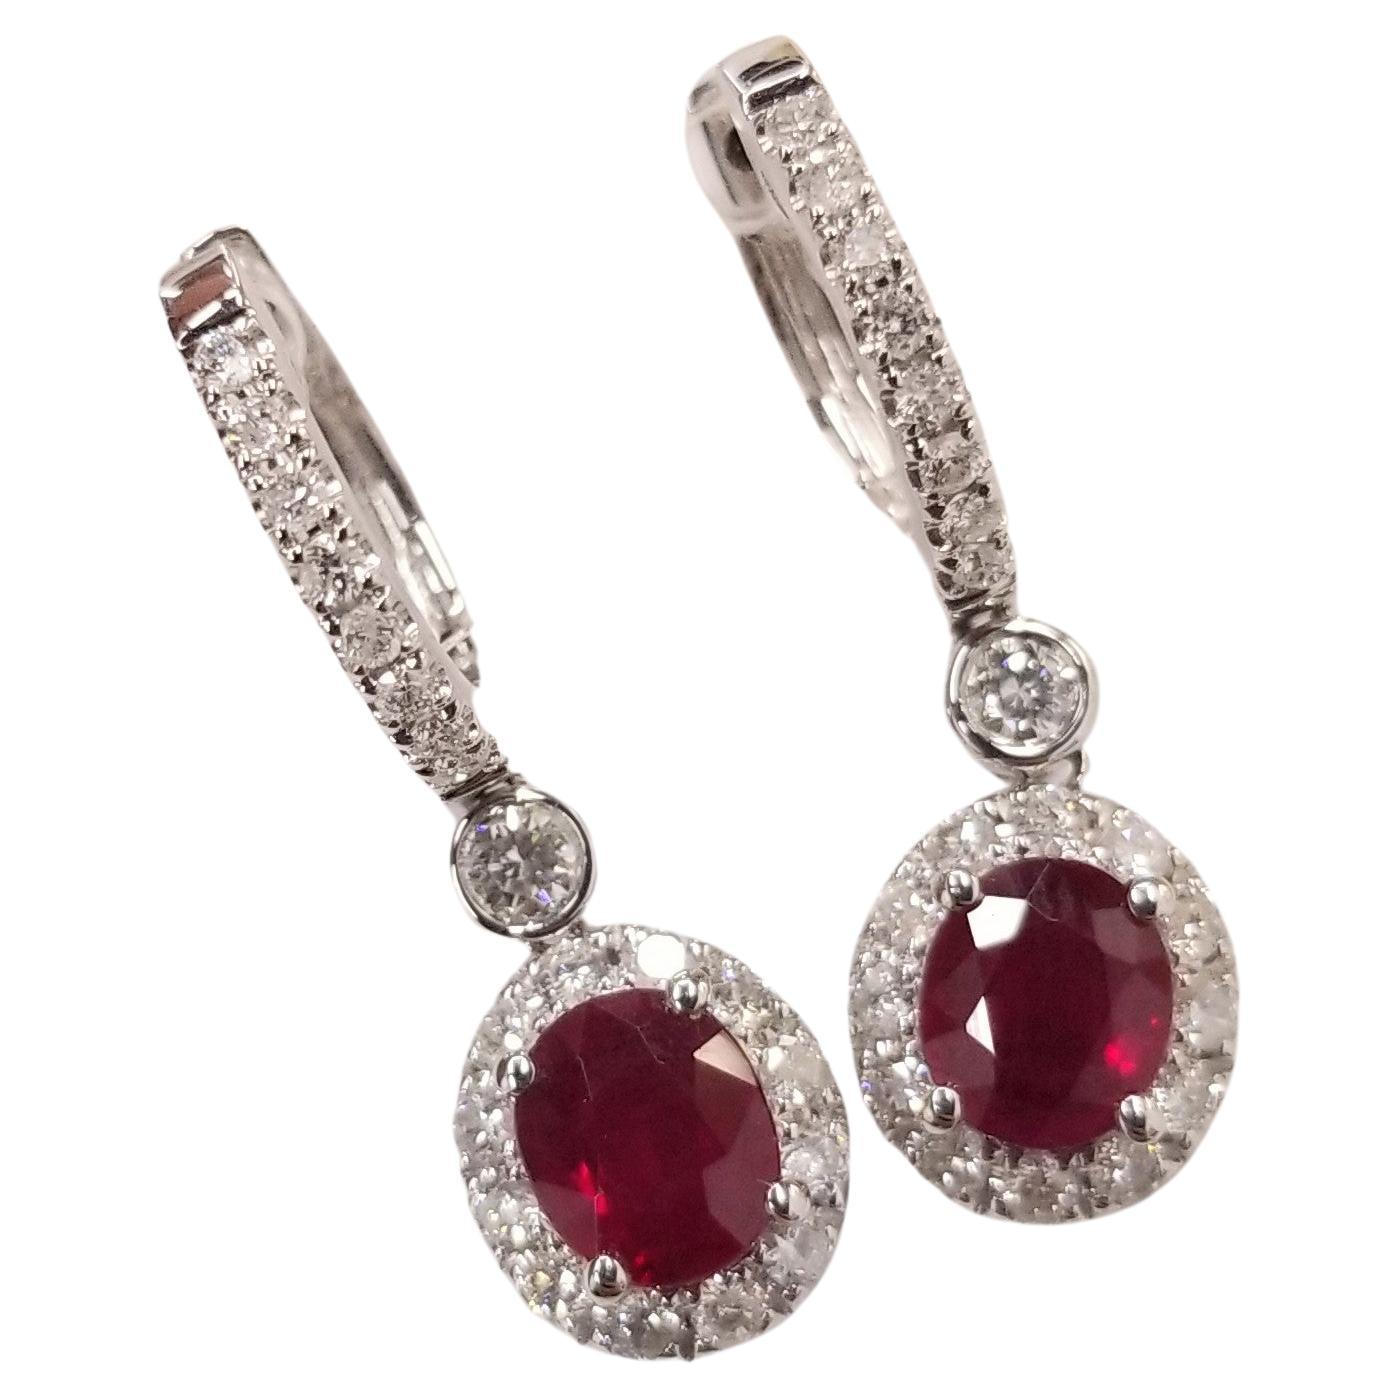 IGI-zertifizierte 1,58 Karat Rubin- und 0,44 Karat Diamant-Ohrringe aus 18 Karat Weißgold